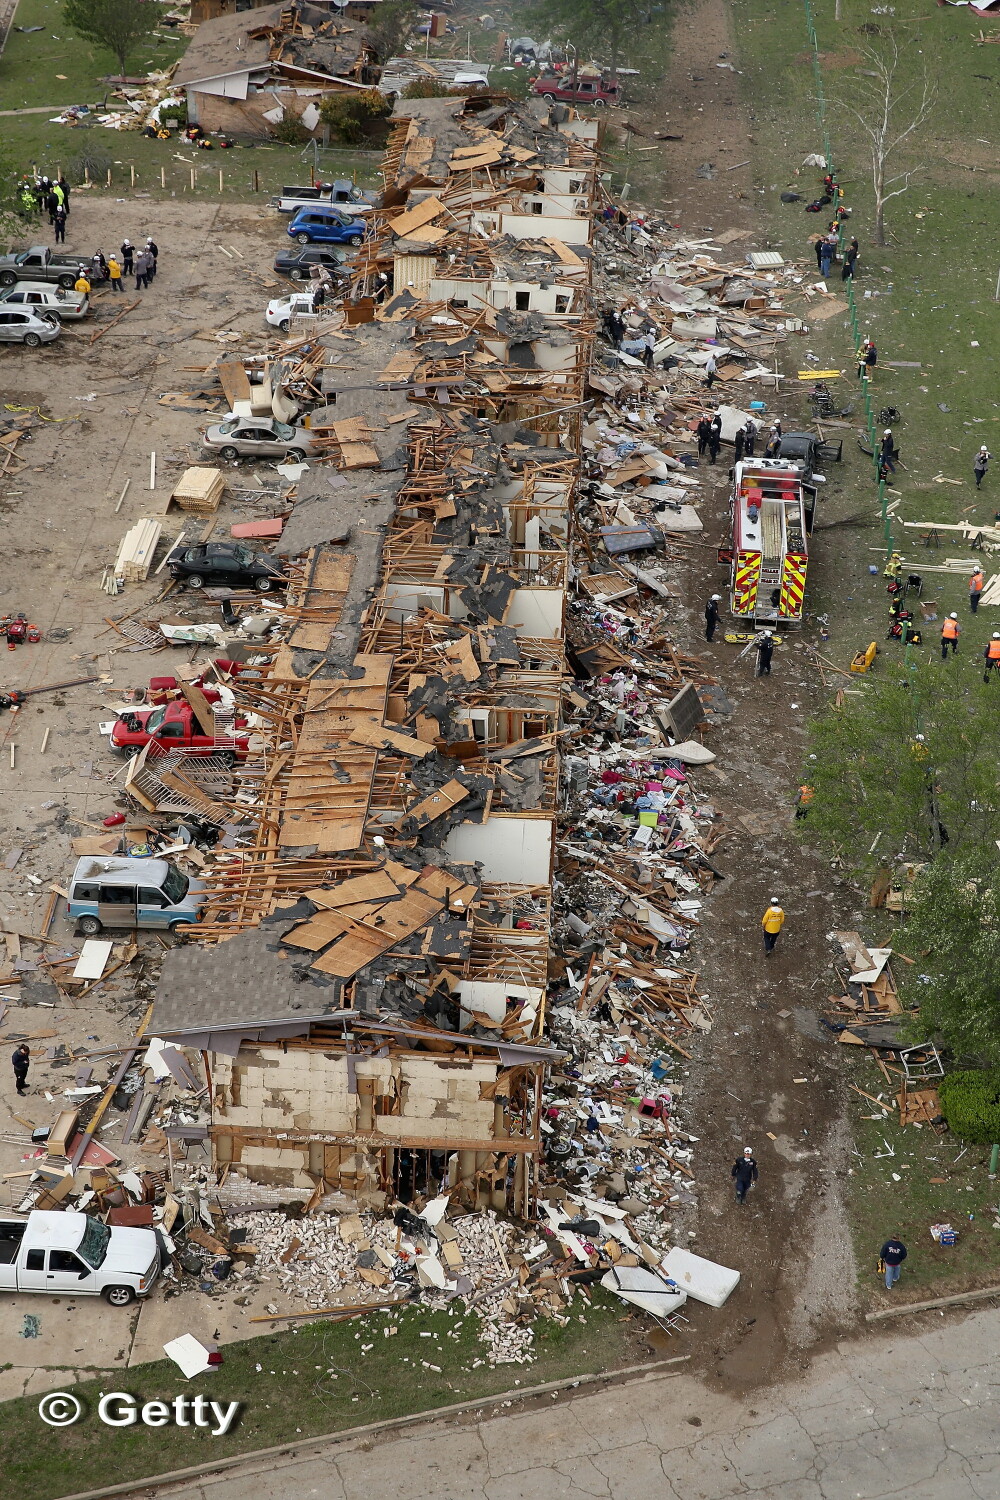 Tragedia din Texas in imagini: cum arata din aer zonele afectate de explozie. 14 persoane au murit - Imaginea 2